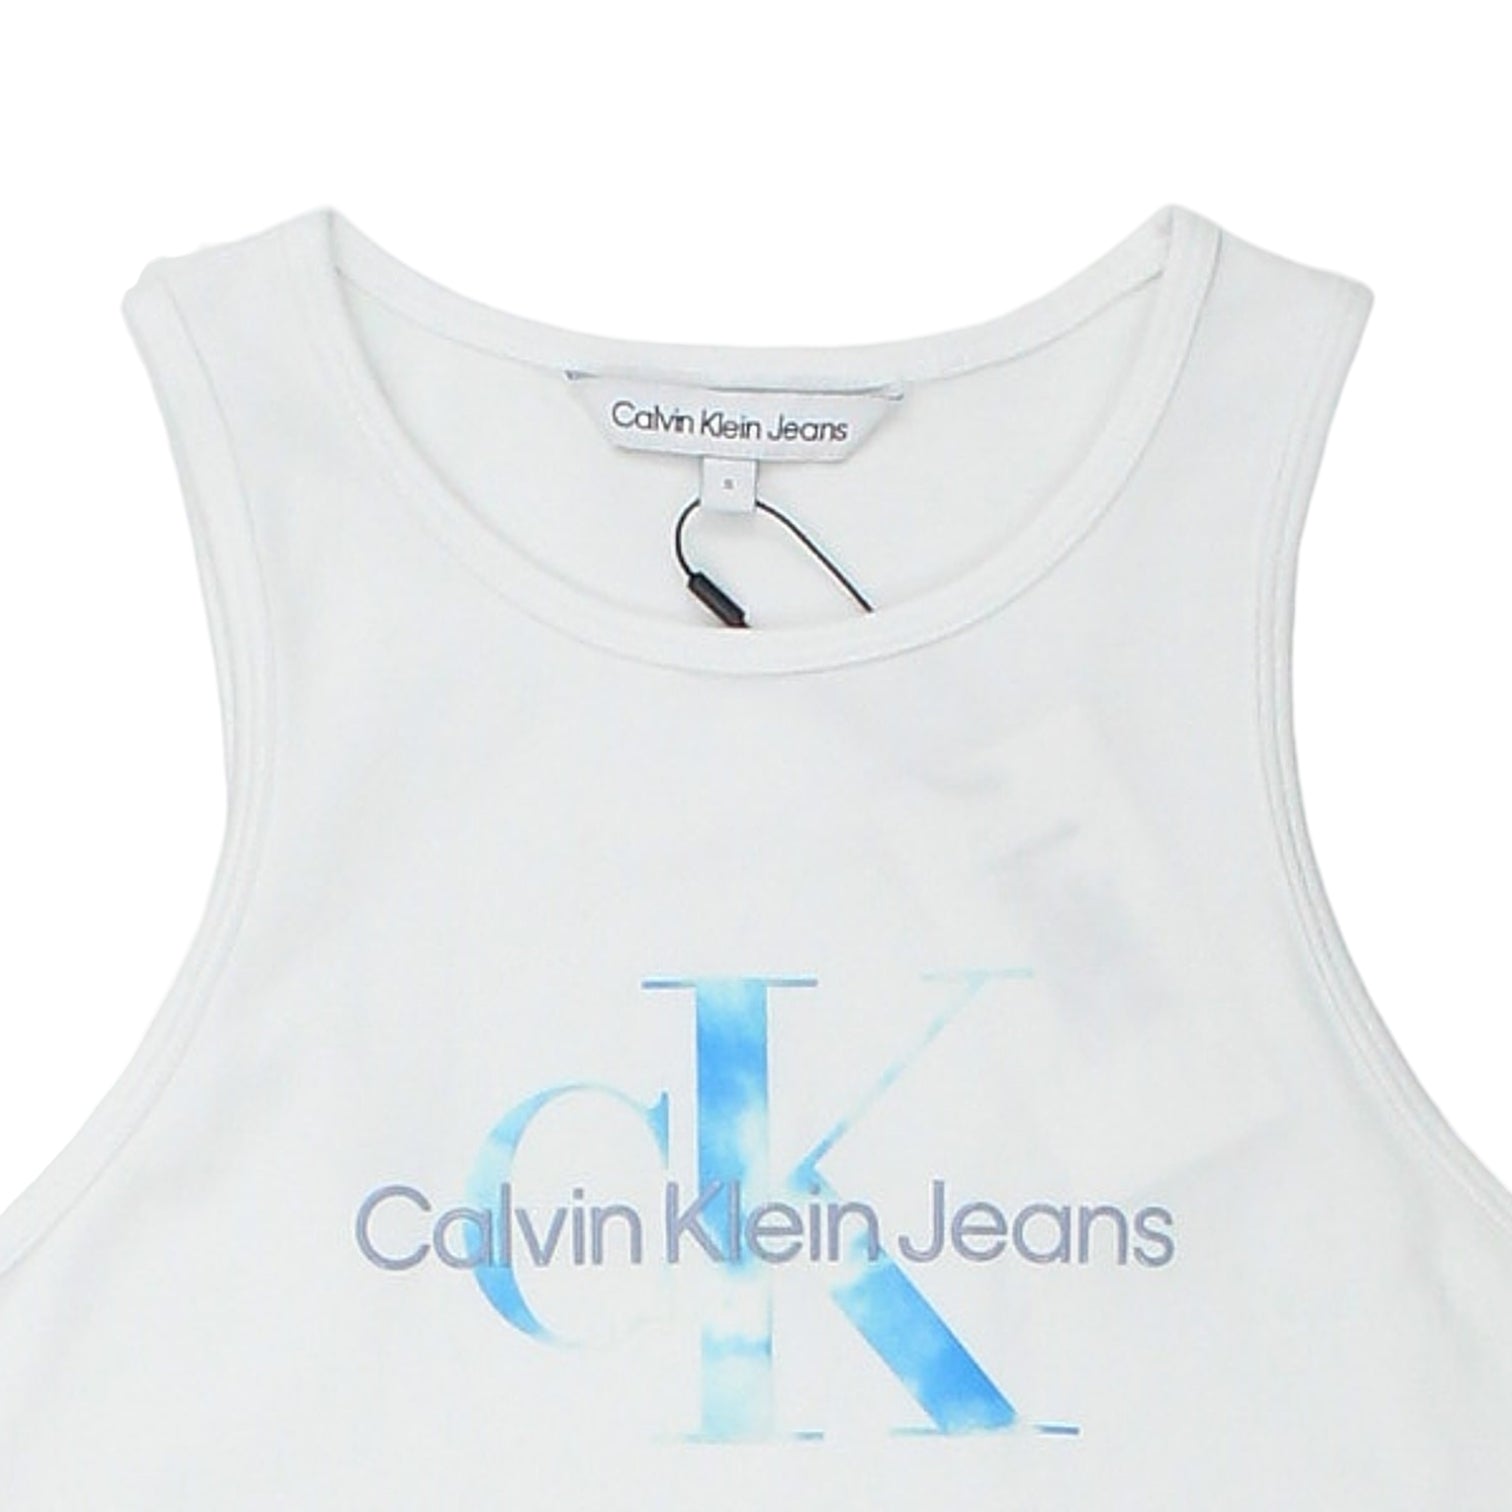 Calvin Klein Jeans White/Aqua Tank Tee